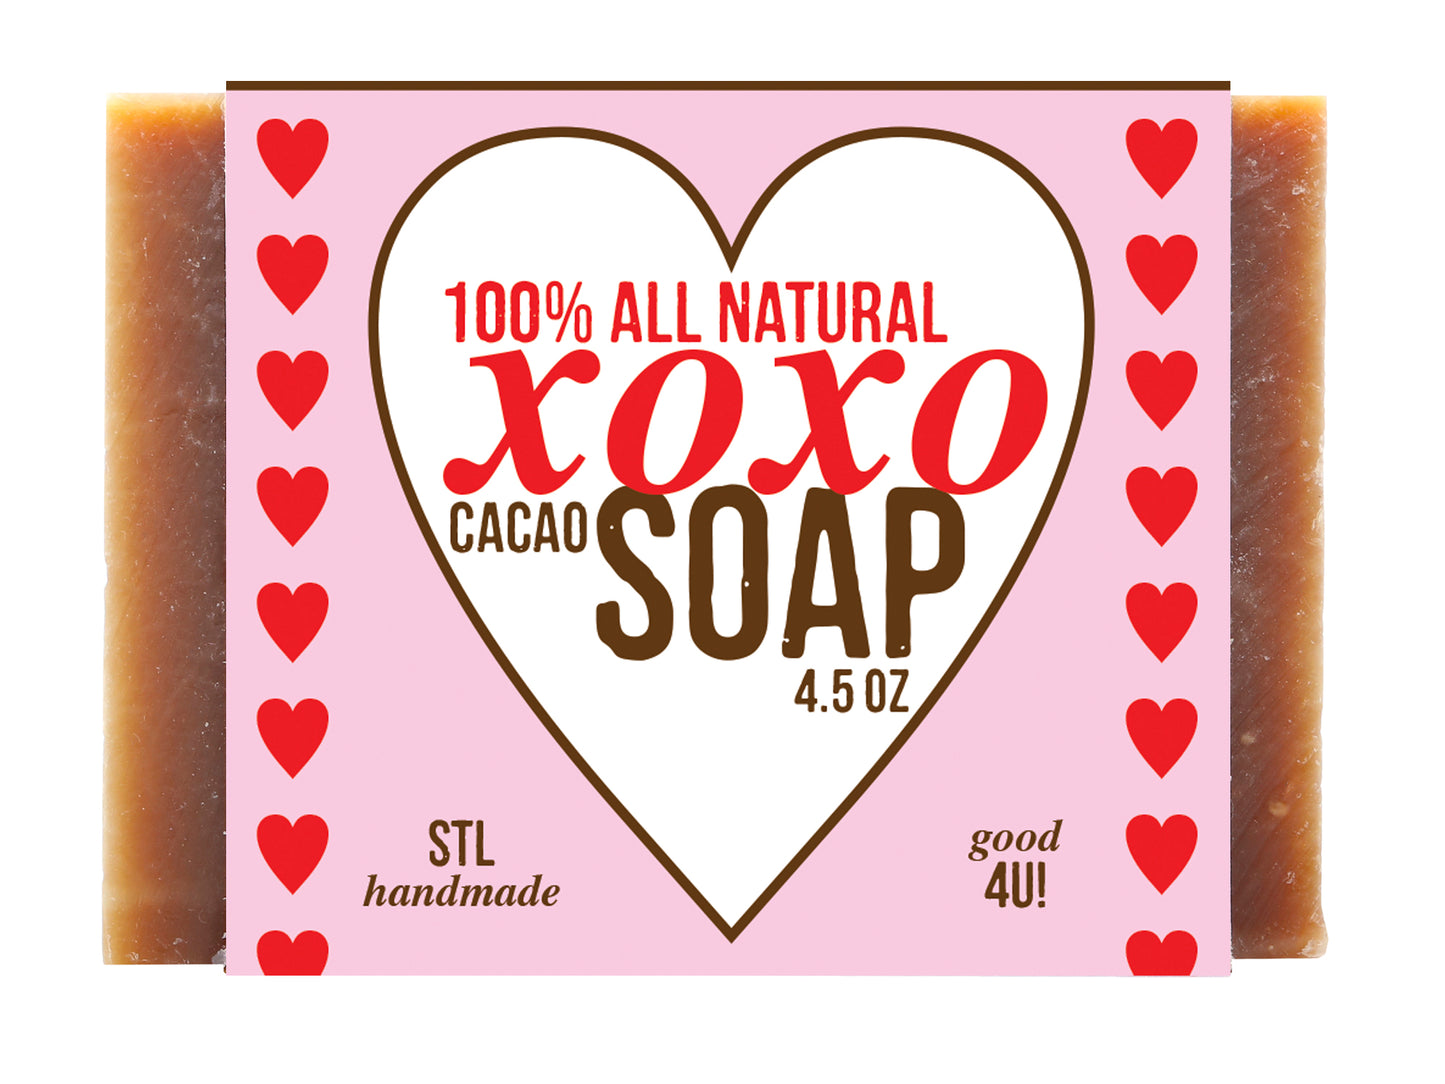 XOXO Cacao Soap